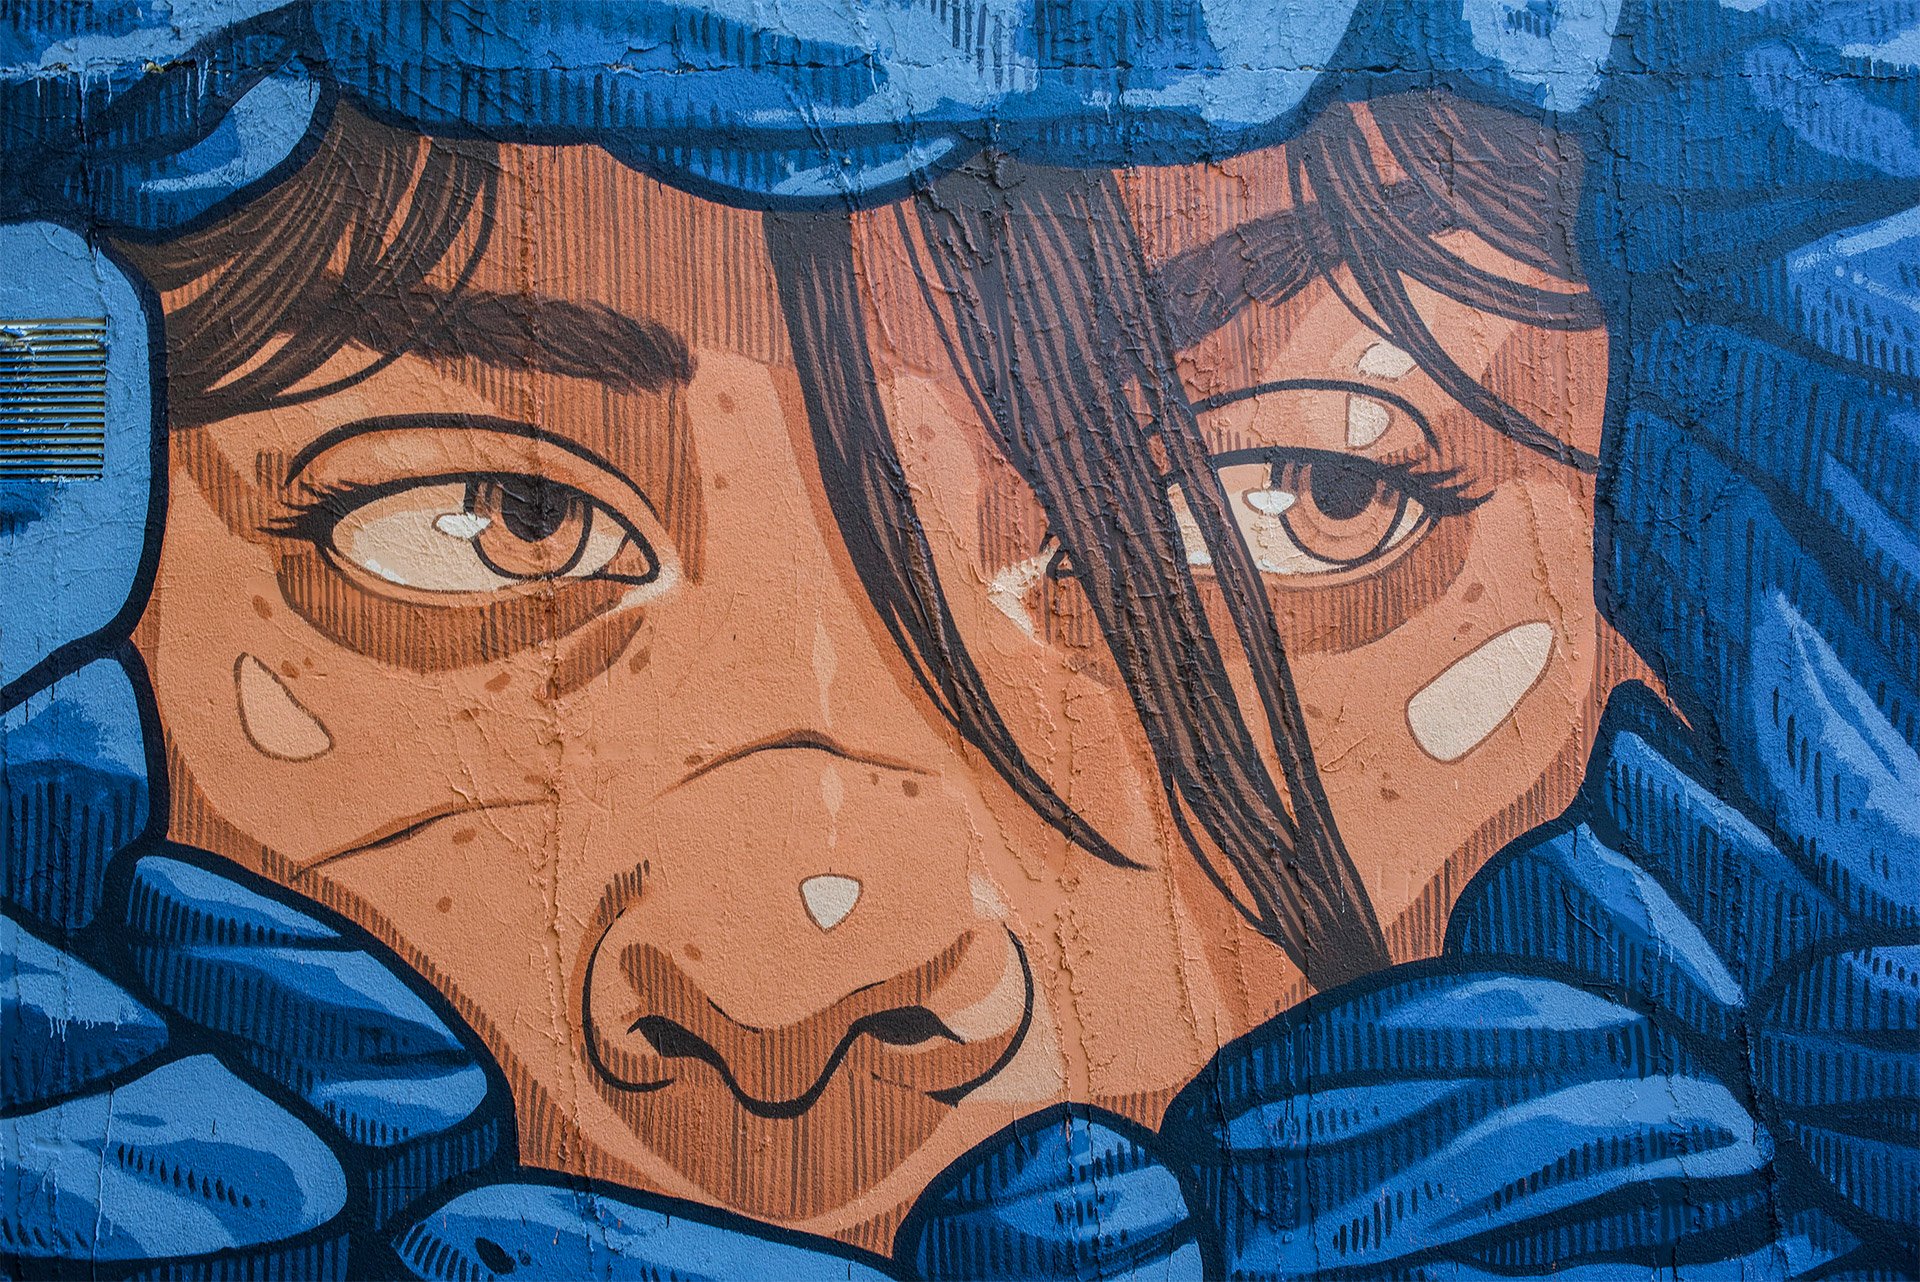 西班牙Lidia Cao户外大型壁画和街头艺术作品